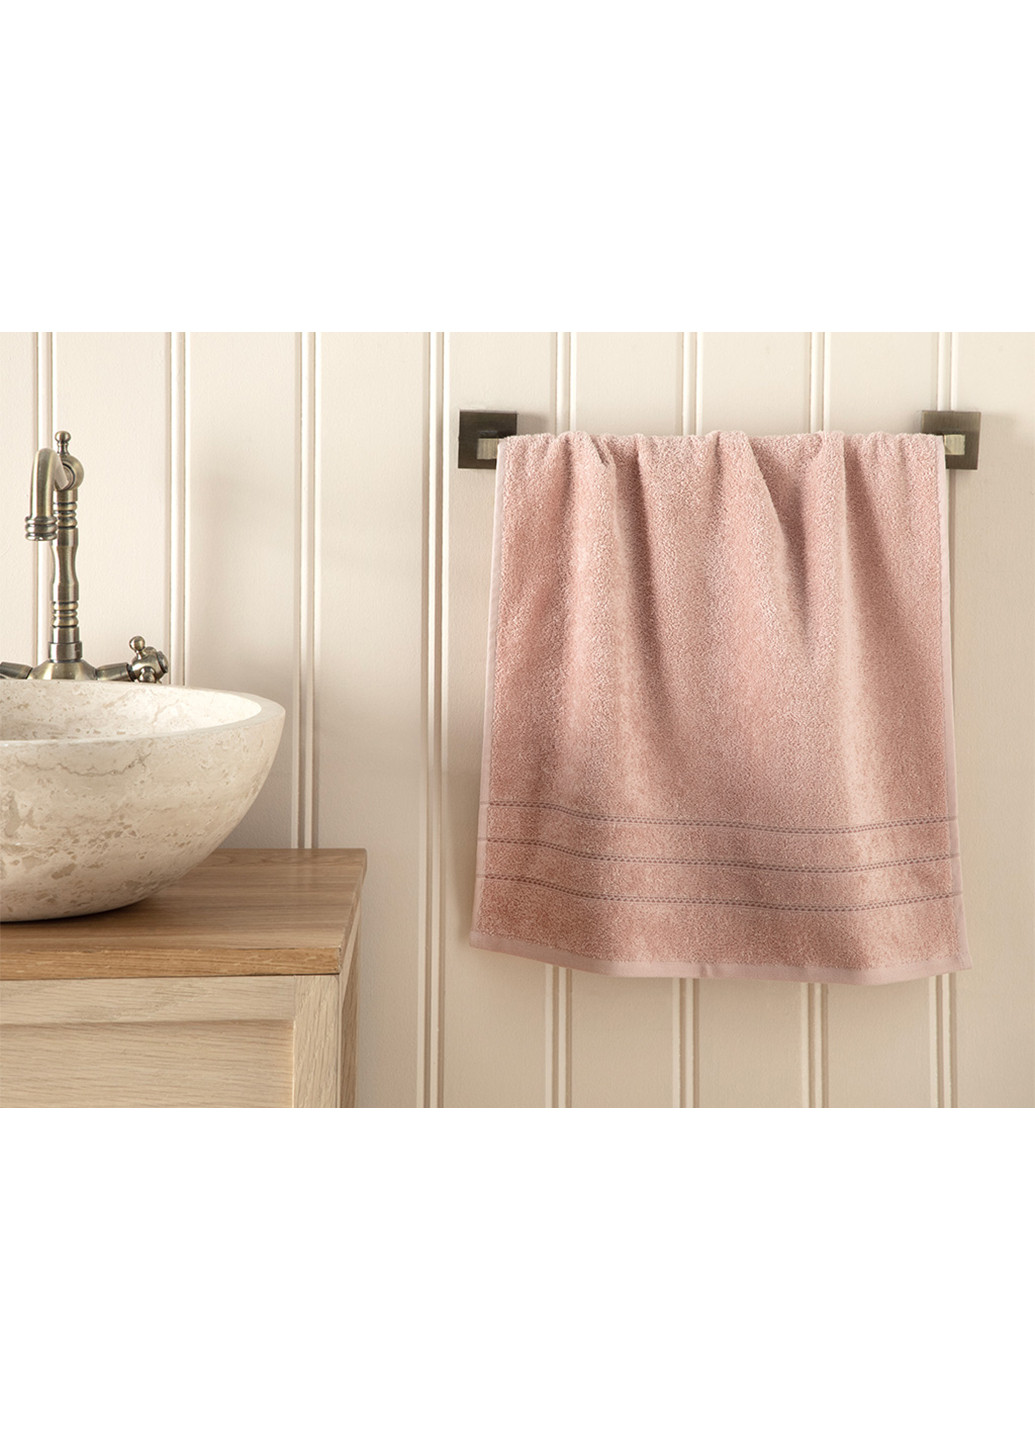 English Home полотенце, 50х90 см однотонный розовый производство - Турция